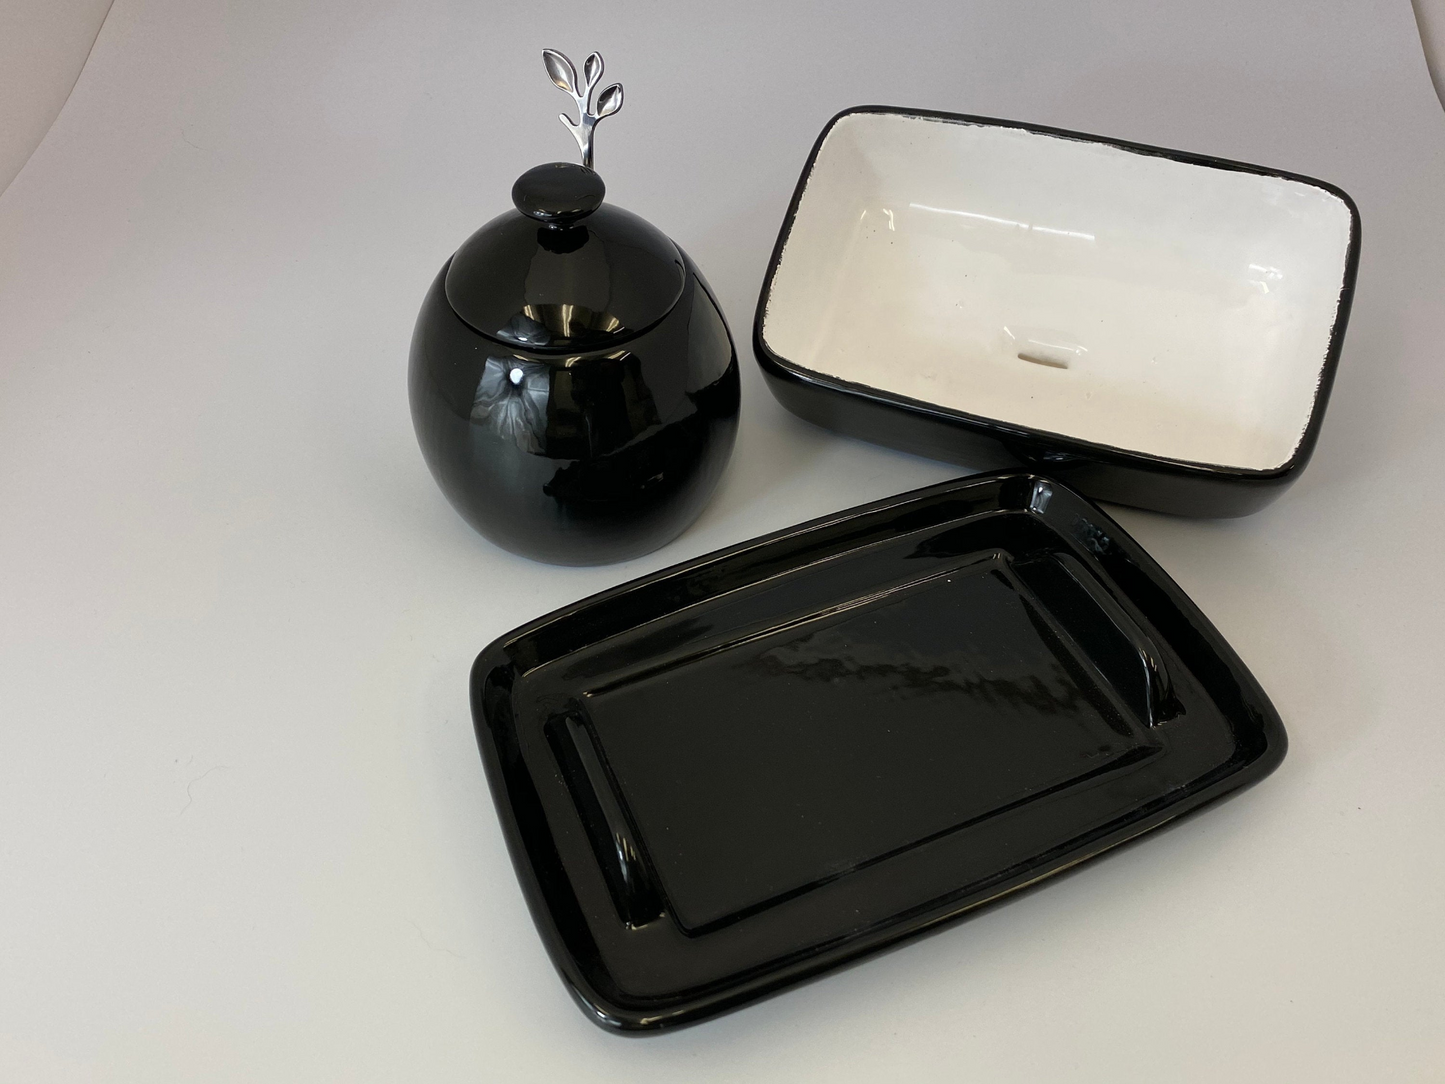 Butter Dish and Sugar Bowl Set - Jet Black Glaze